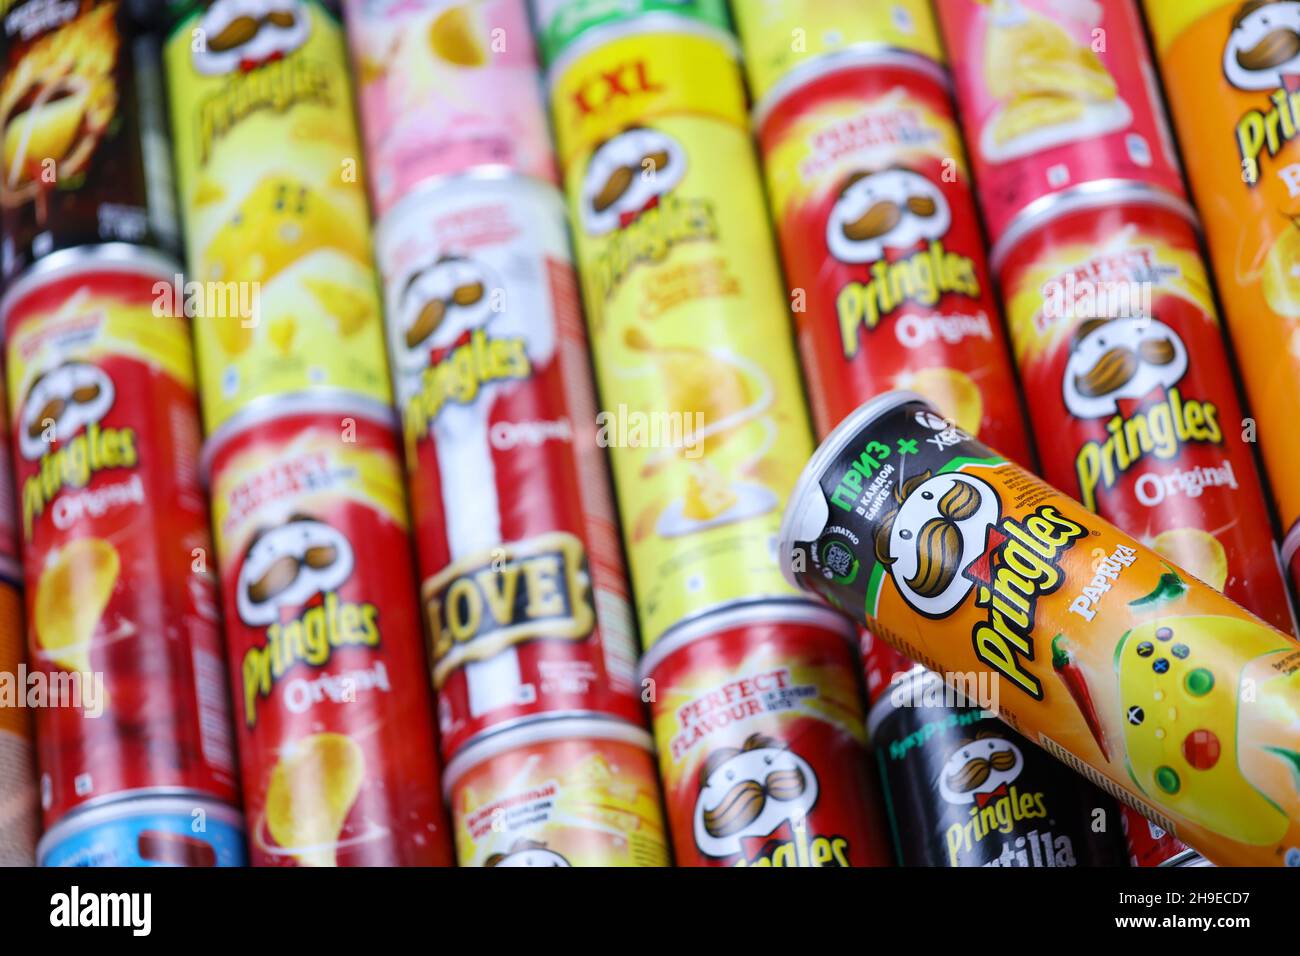 KHARKOV, UCRAINA - 30 MARZO 2021: Molti cilindri Pringles chips scatole con varios colori e sapori. Marchio americano di patatine a base di patate impilabili Foto Stock